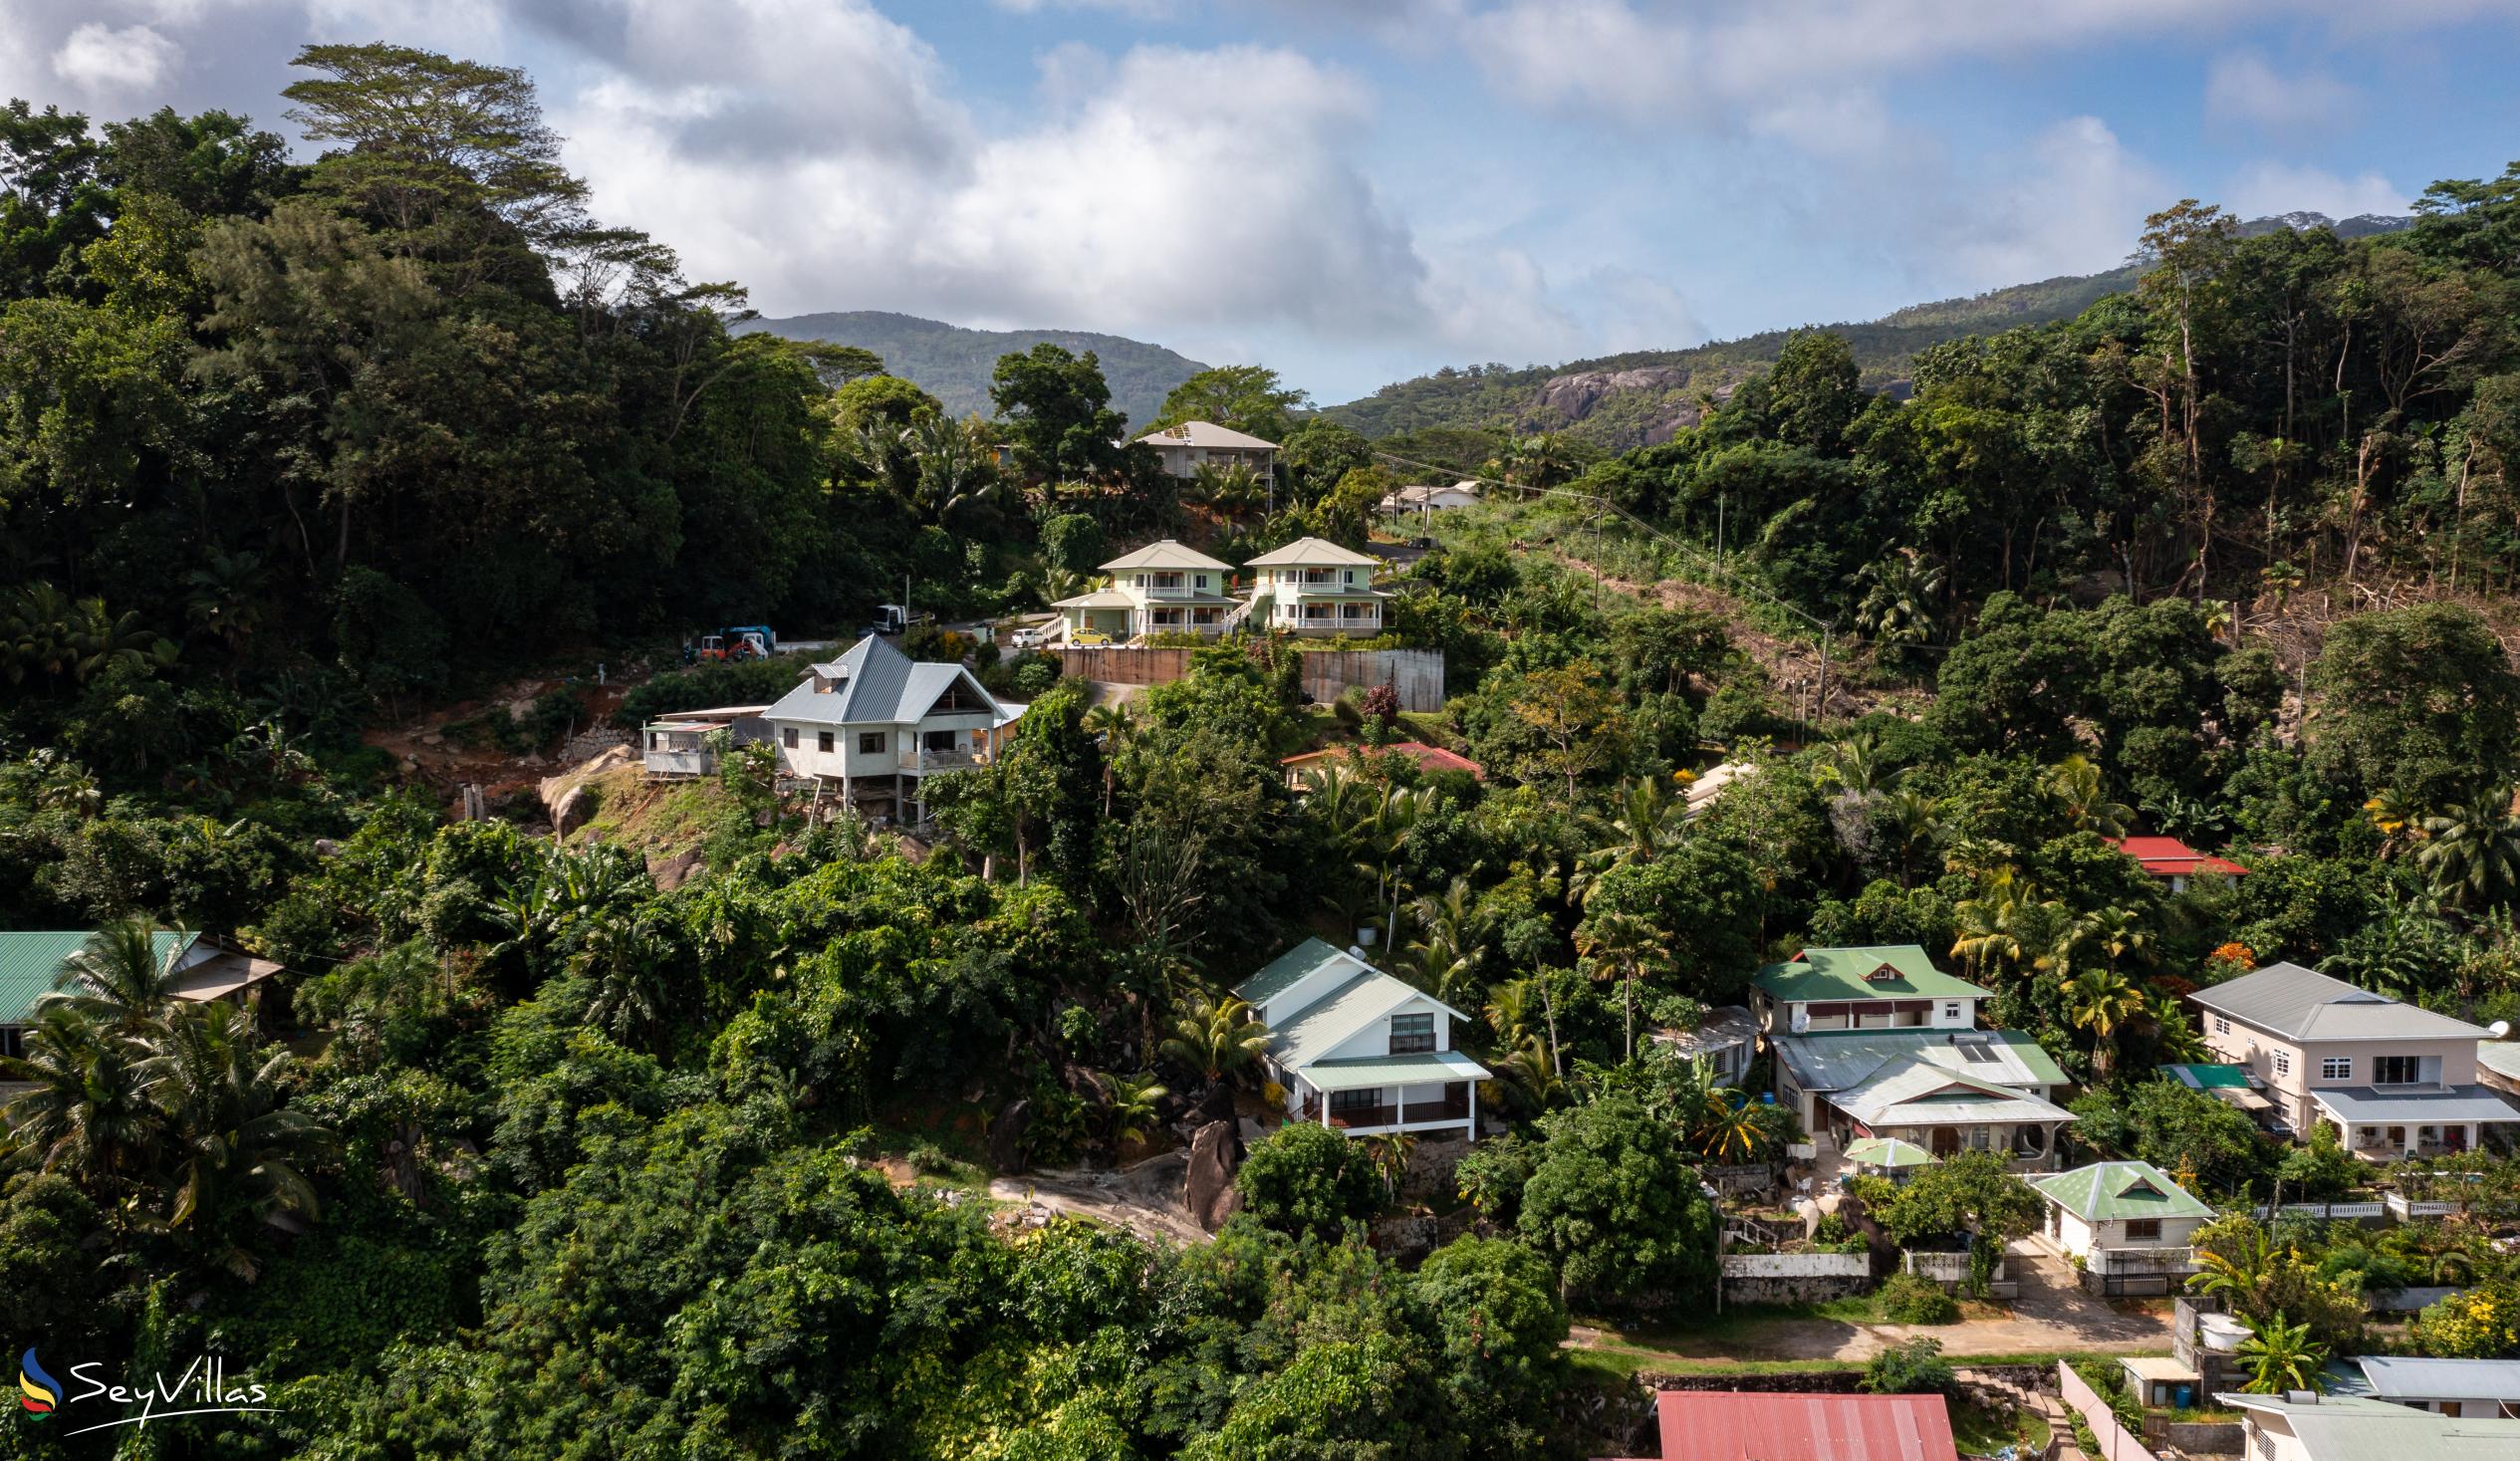 Foto 21: Top View Retreat - Lage - Mahé (Seychellen)